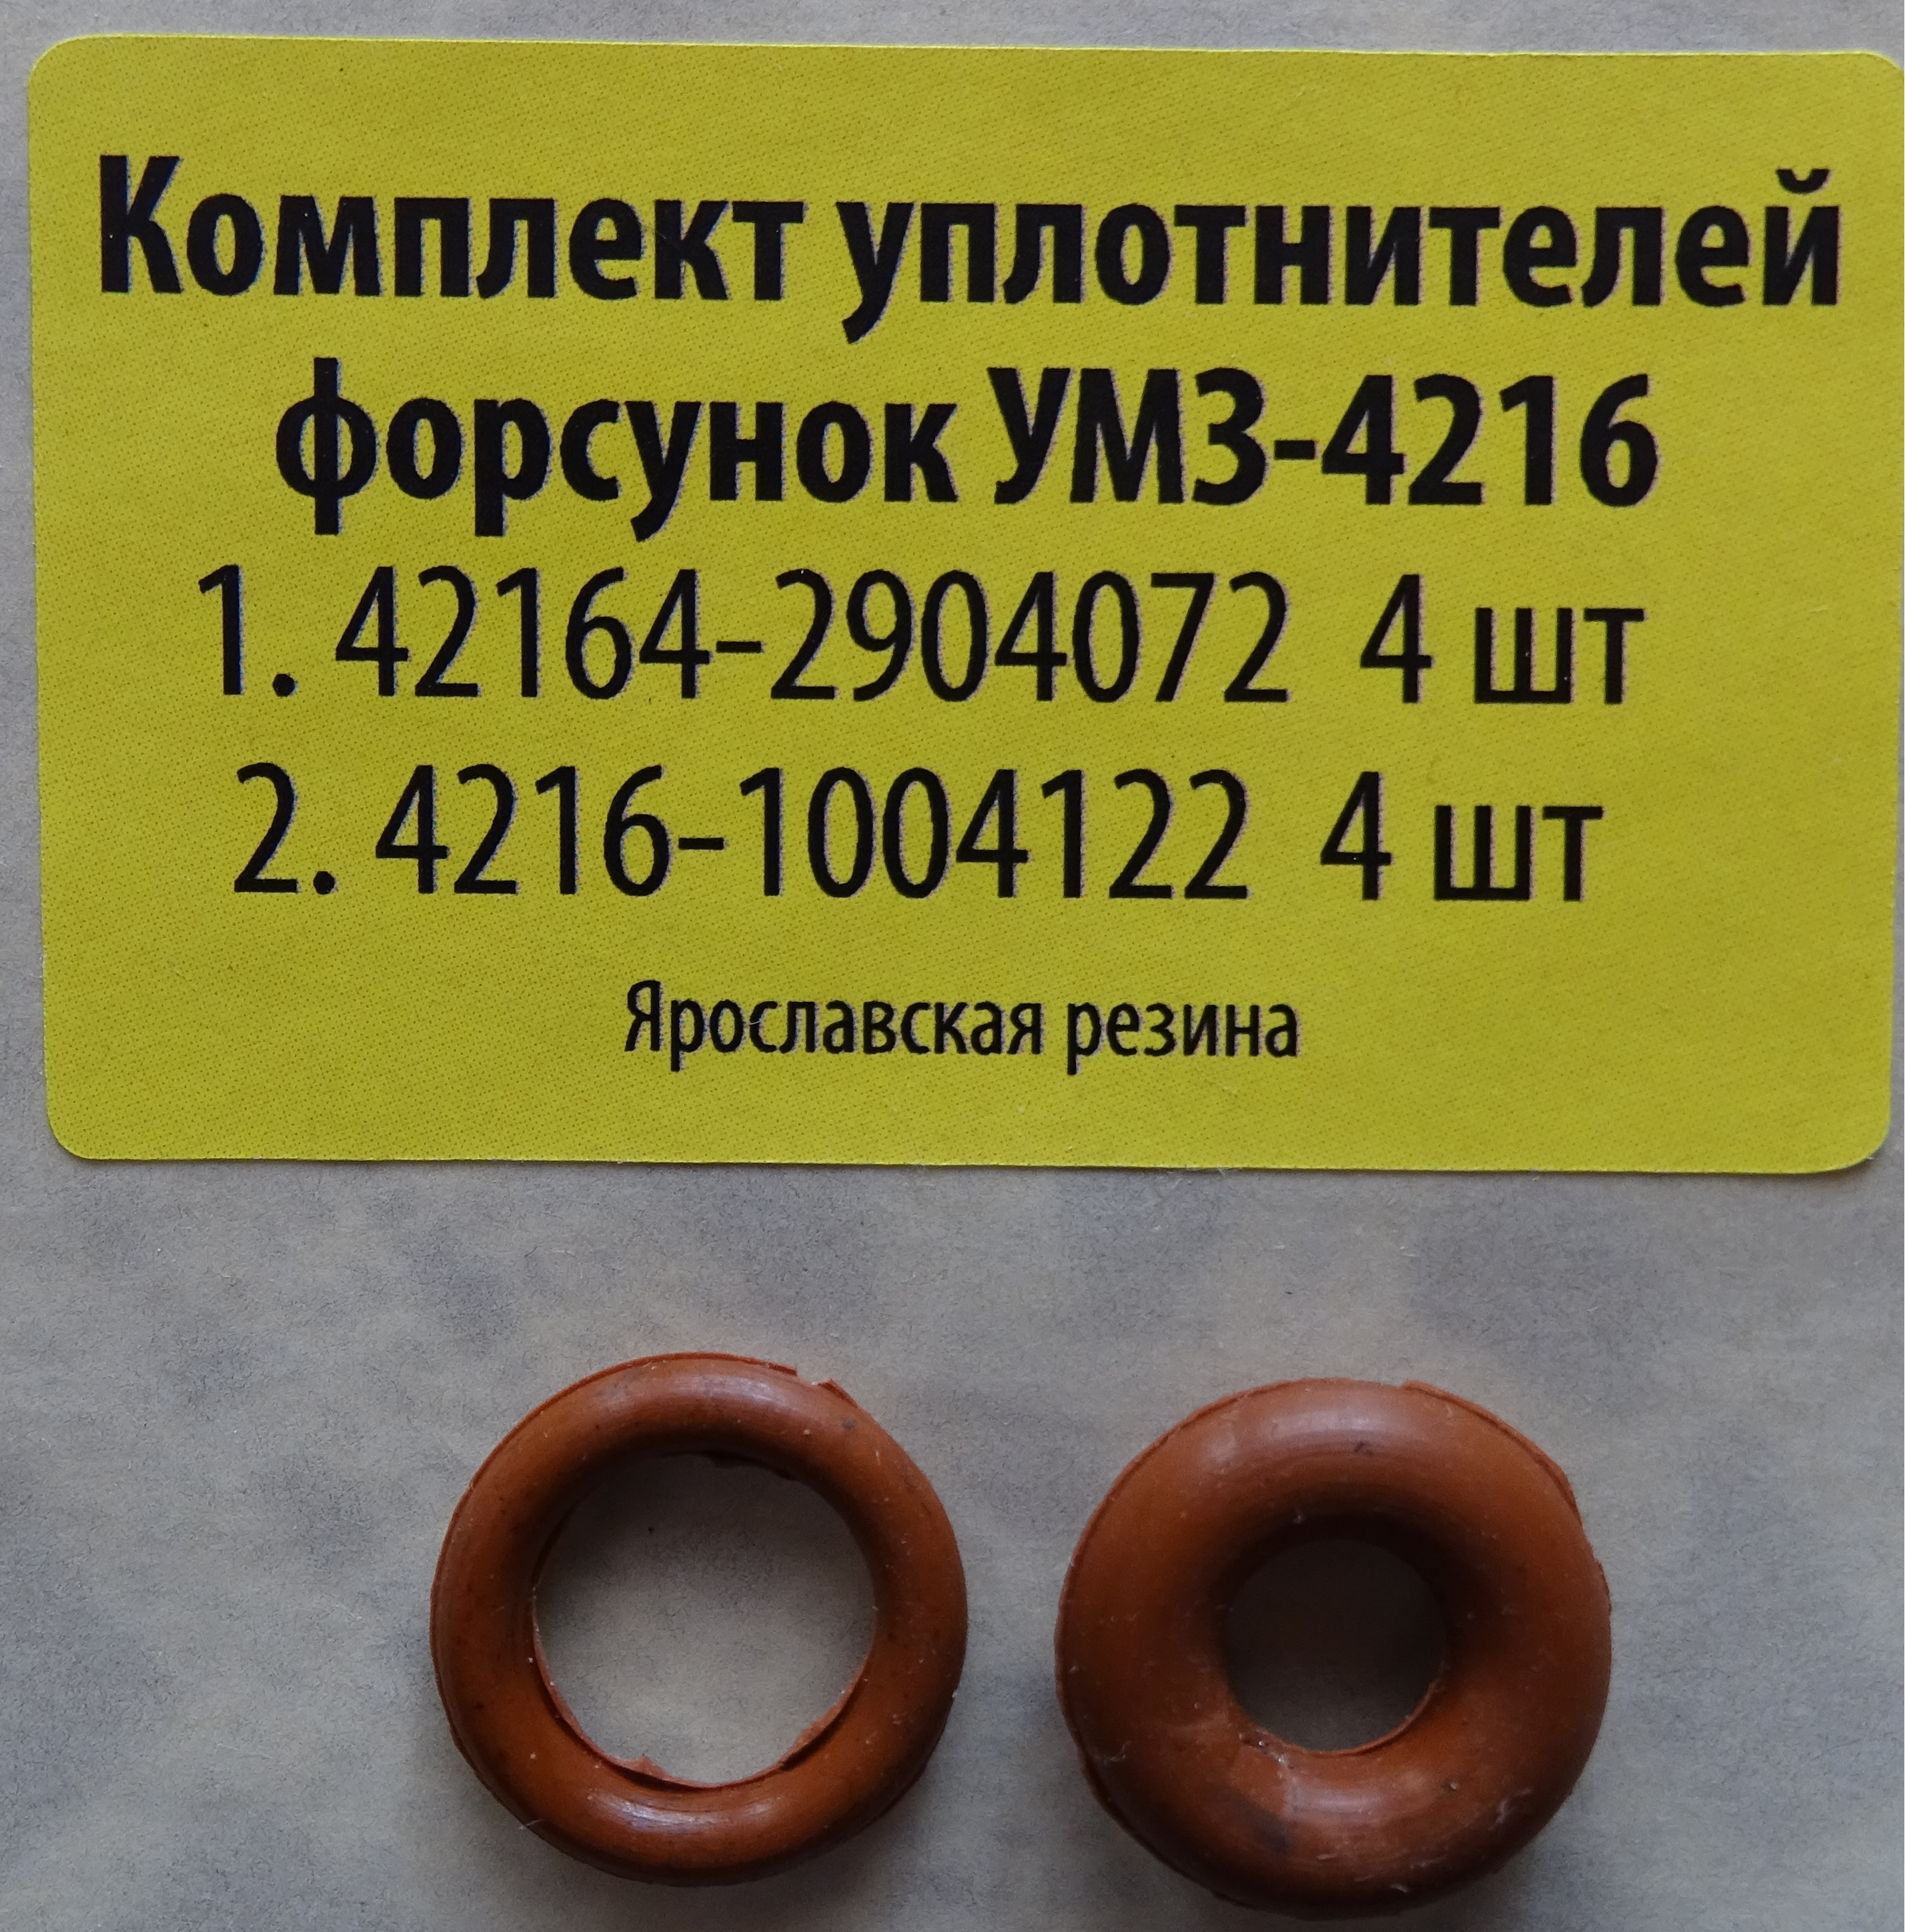 Комплект уплотнителей форсунок УМЗ-4216 (к-т 8 шт.)